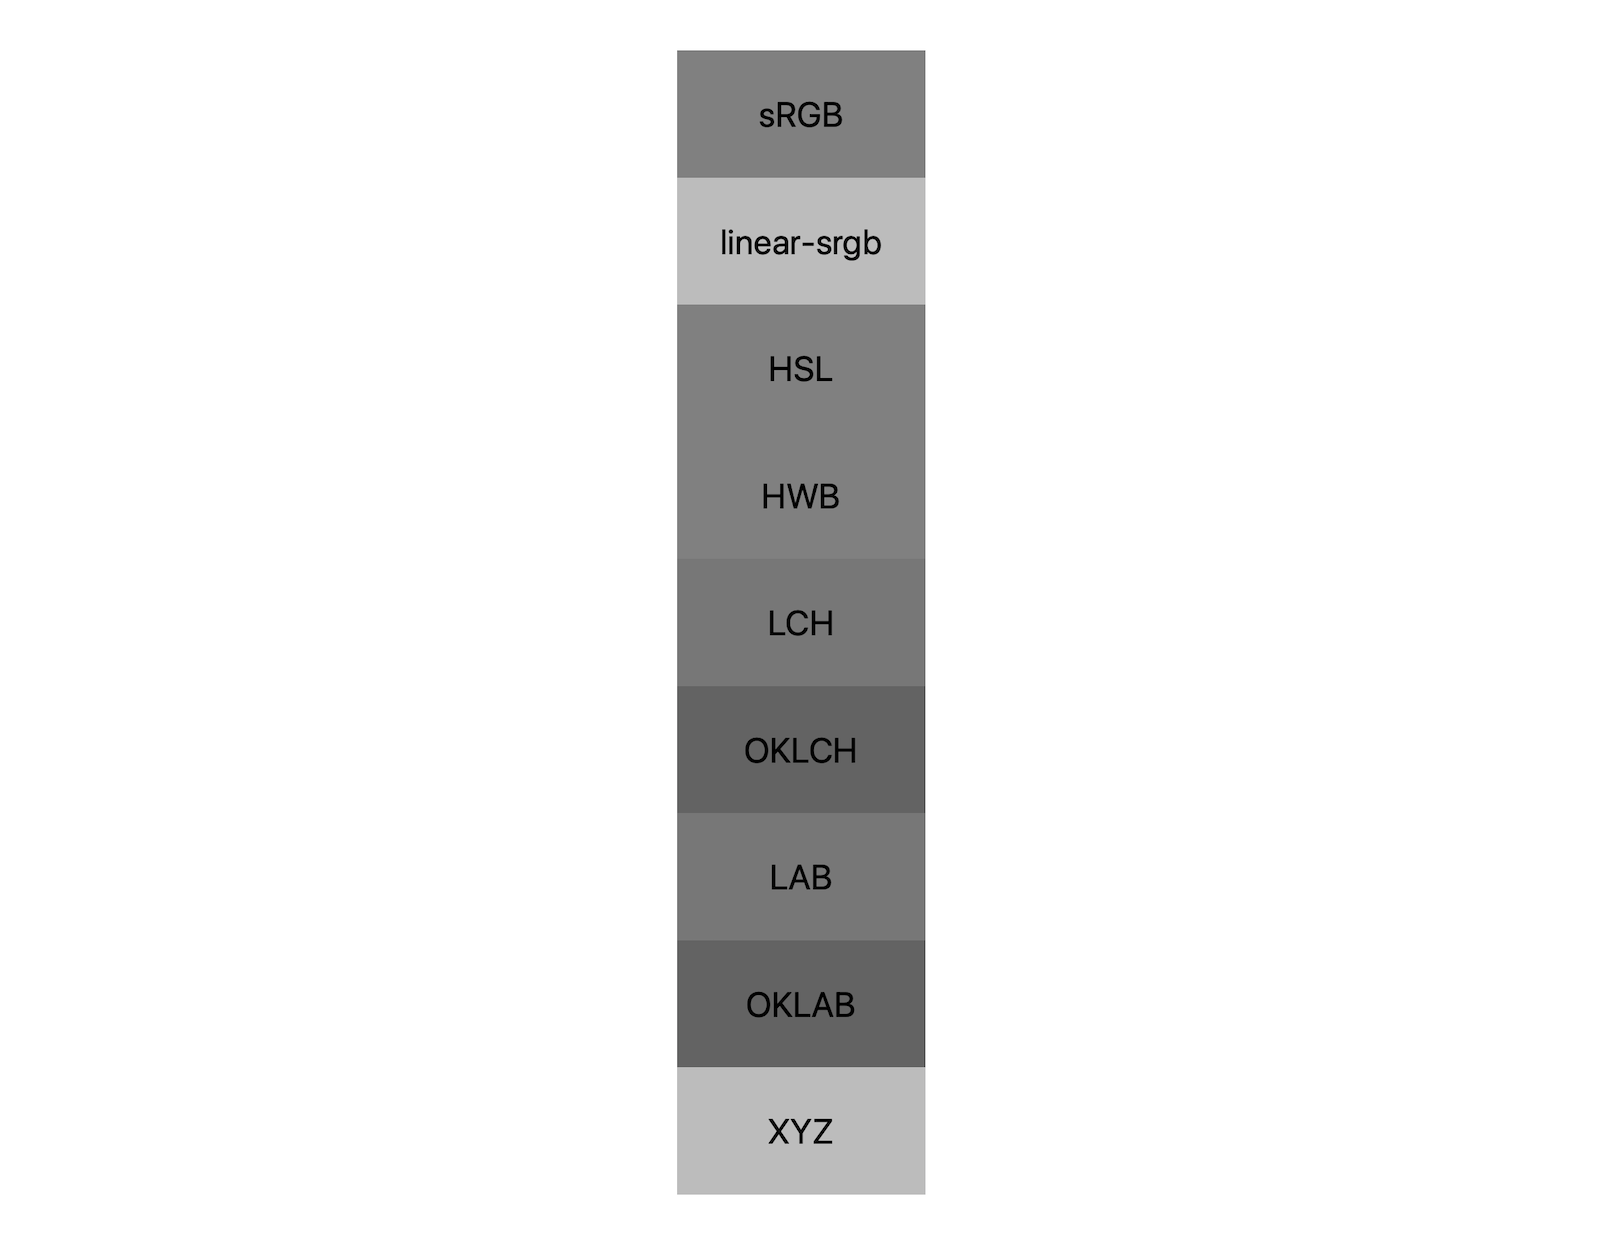 Sept espaces colorimétriques (srgb, linear-srgb, lch, oklch, lab, oklab, xyz) affichent chacun le résultat du mélange noir et blanc. Environ cinq nuances différentes sont affichées, ce qui démontre que chaque espace colorimétrique peut même se mélanger au gris différemment.